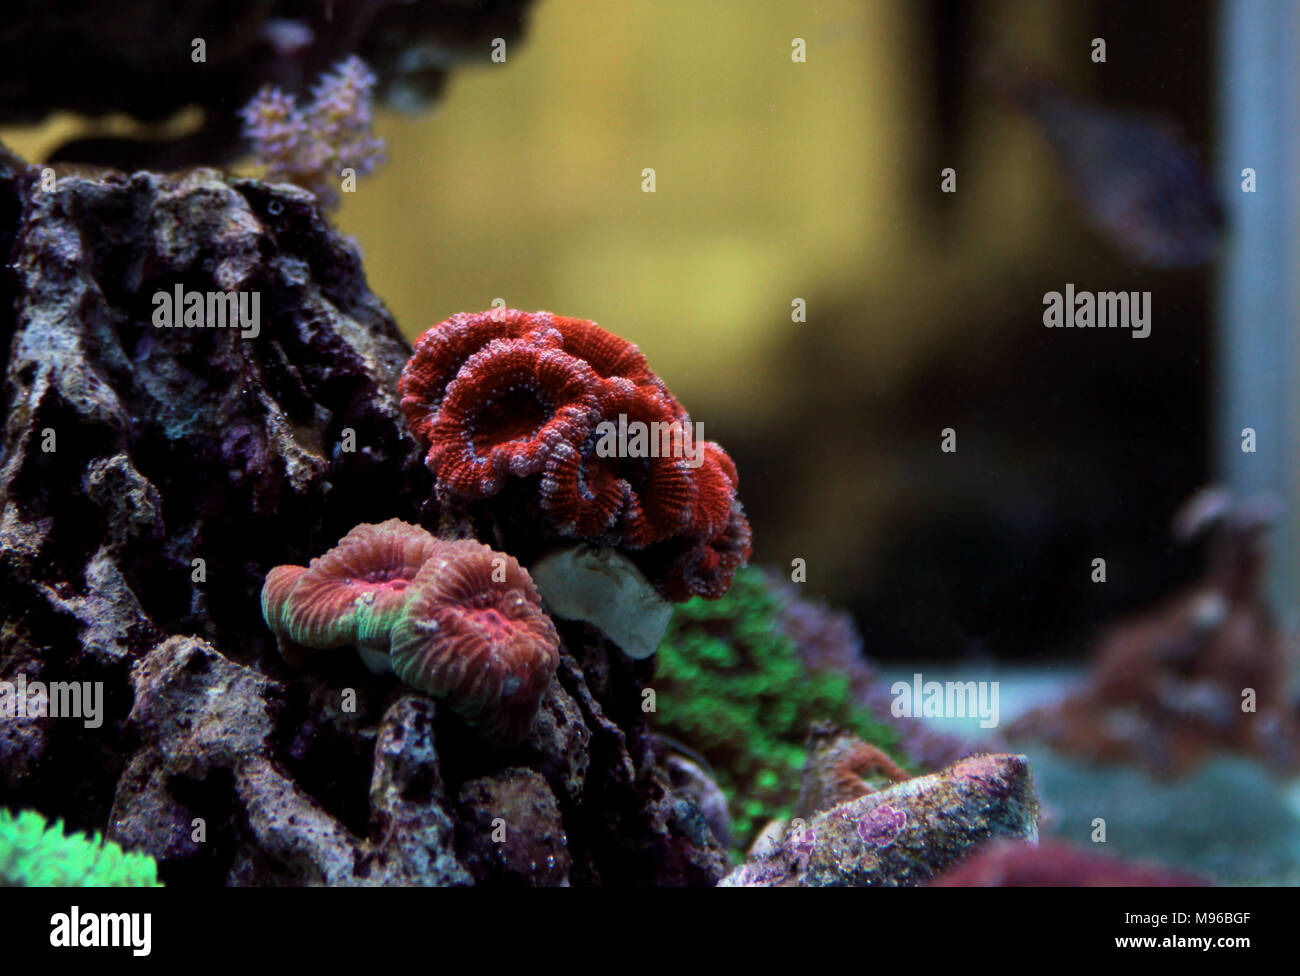 Red Acanthastrea LPS coral in aquarium tank Stock Photo